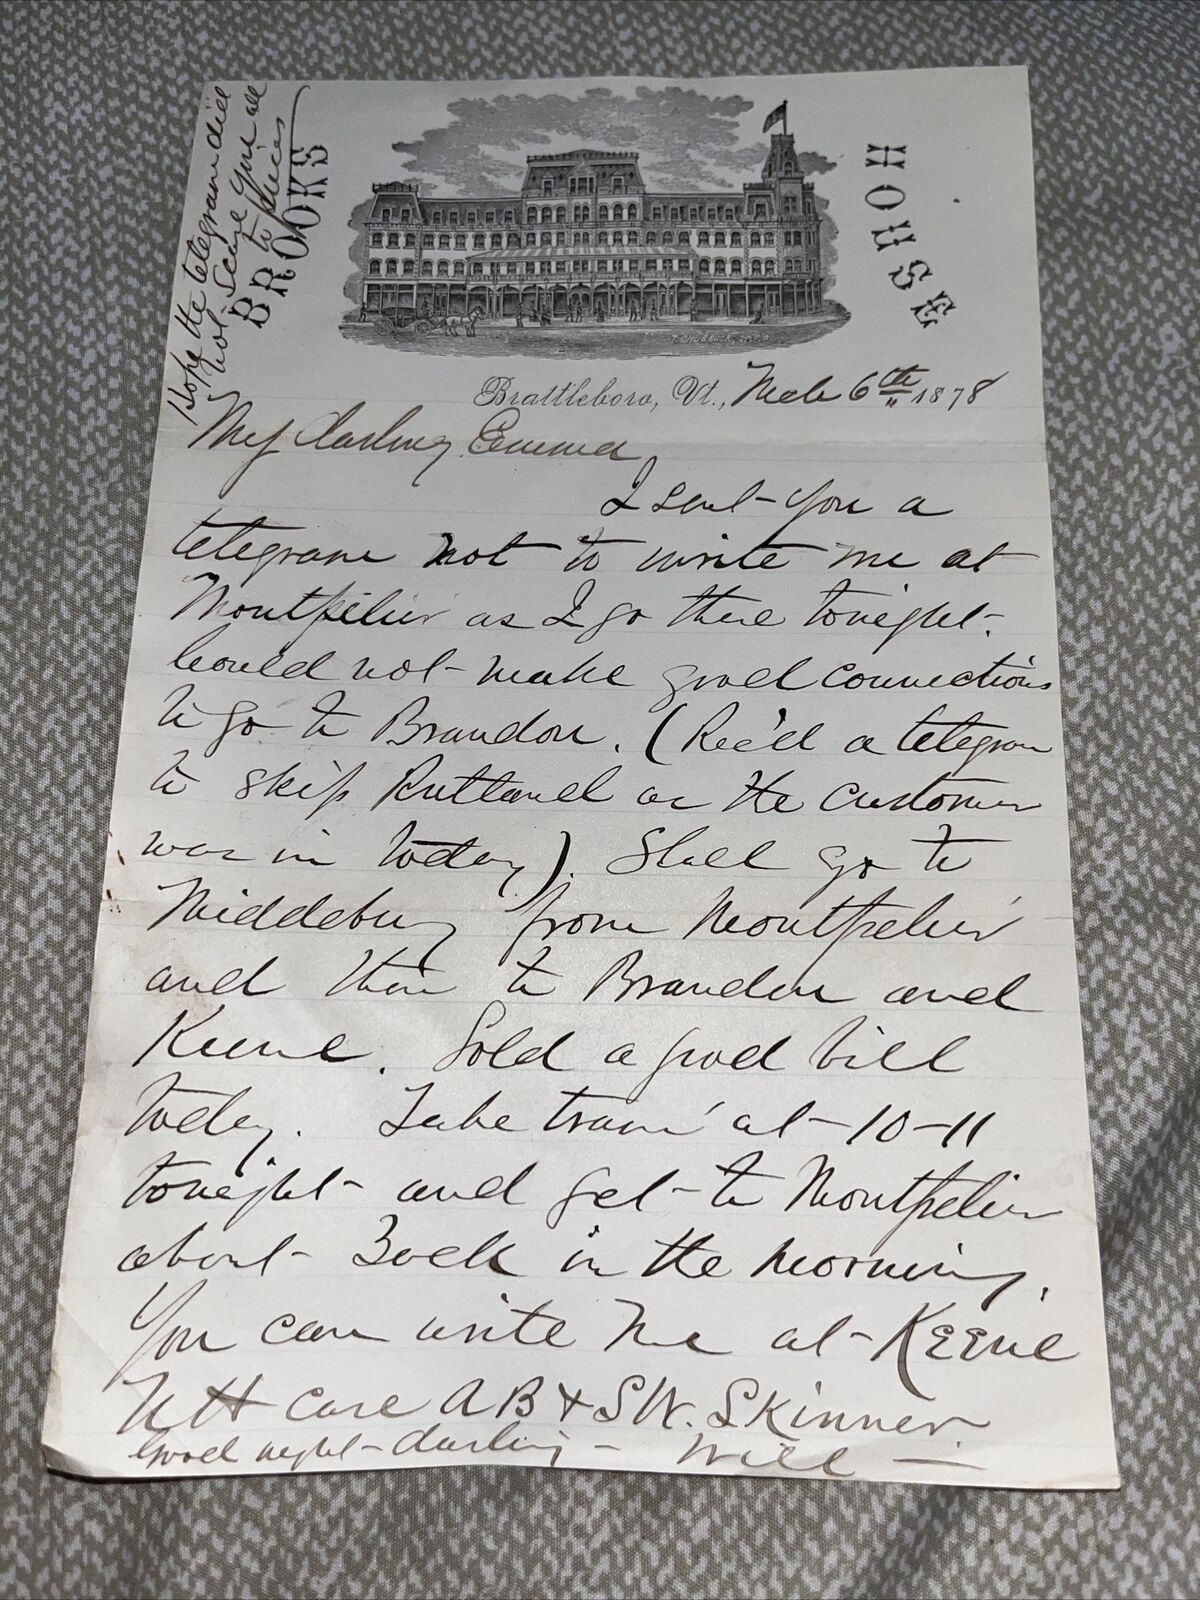 Antique 1878 Letter Brooks House Hotel Letterhead Brattleboro Vermont VT History